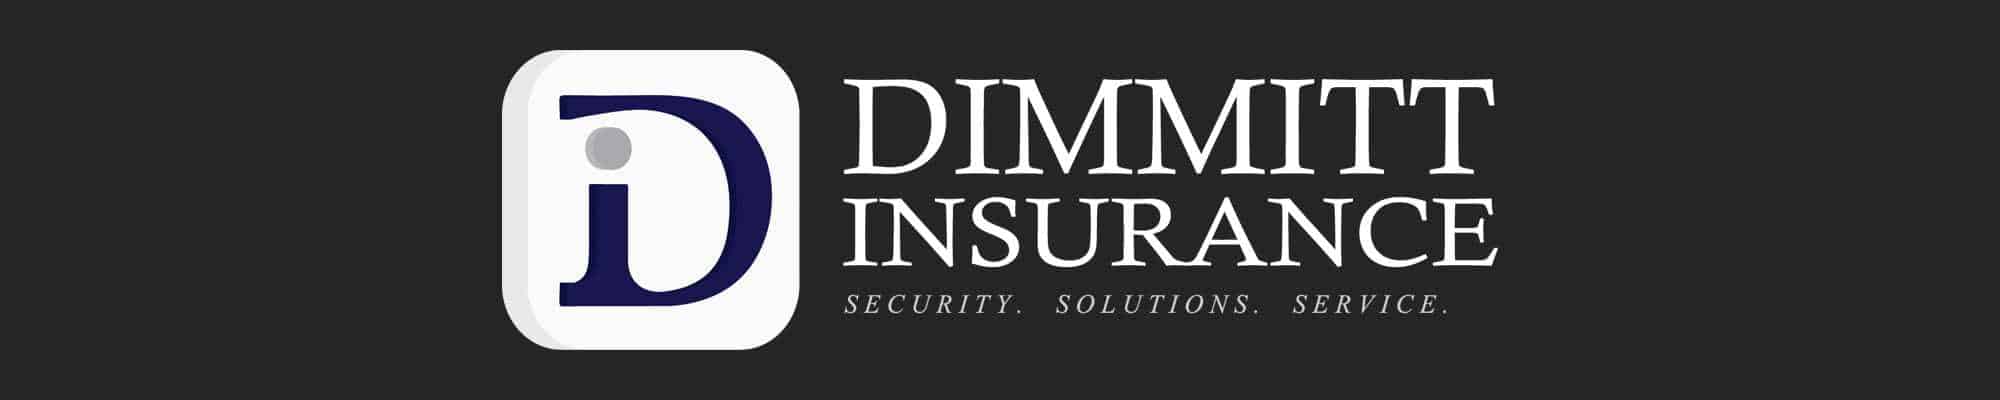 Dimmitt-Insurance